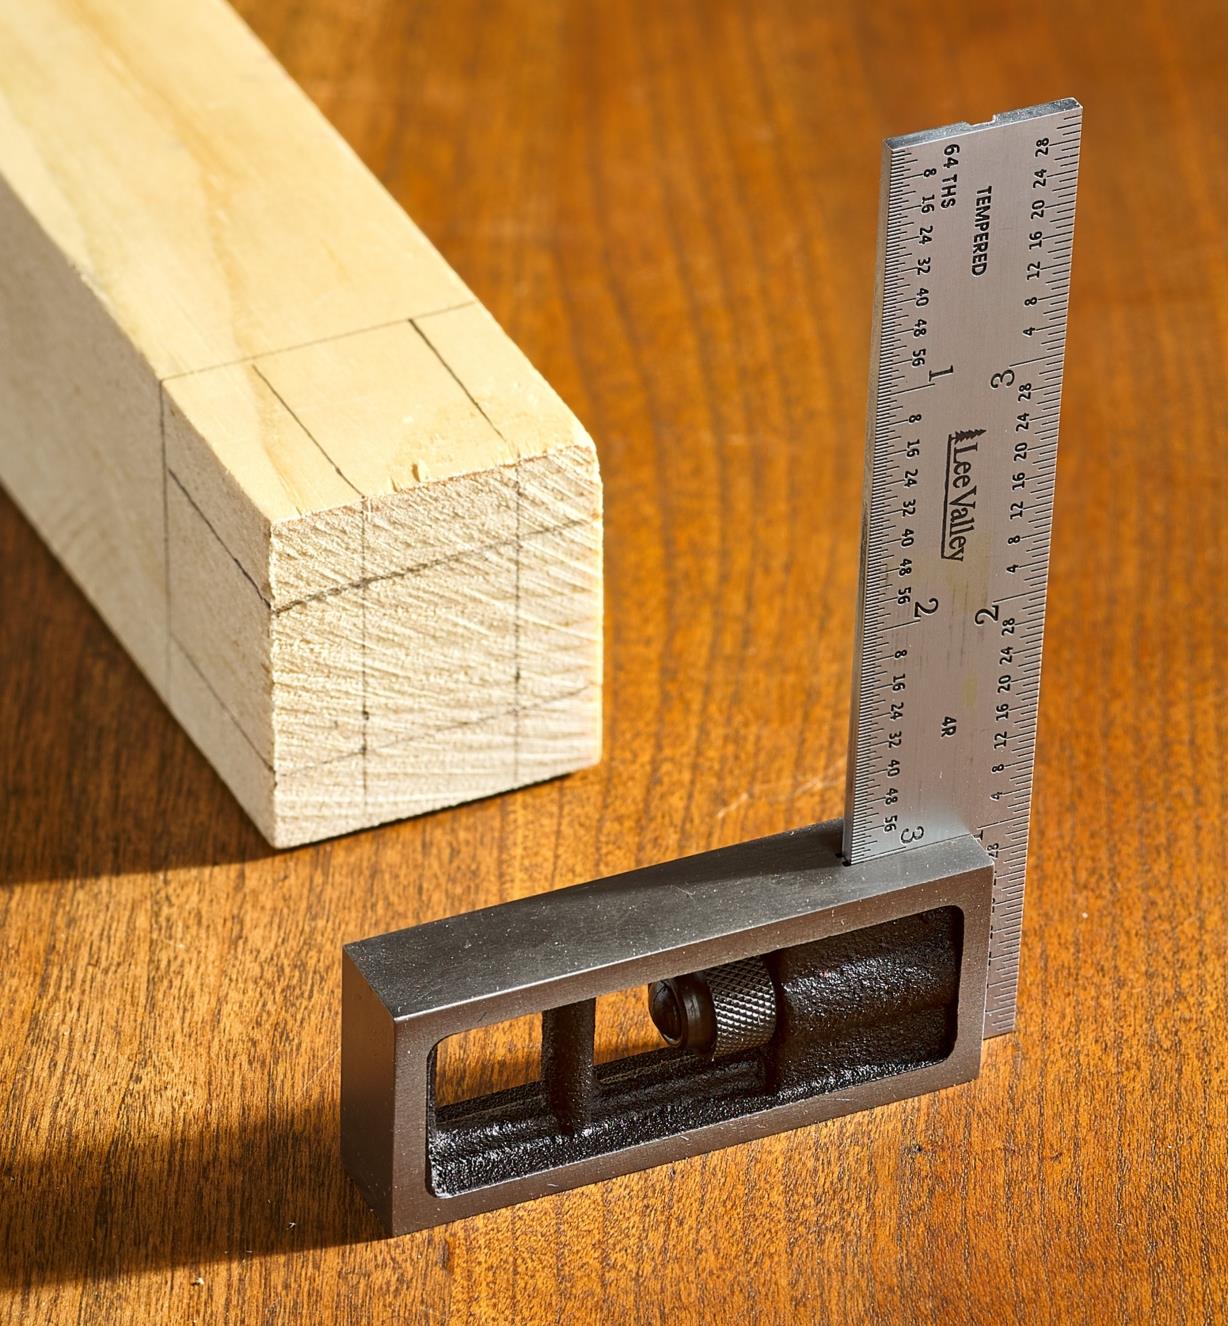 Tracés réalisés sur une pièce de bois à l'aide d'une équerre avec une lame de 4 po